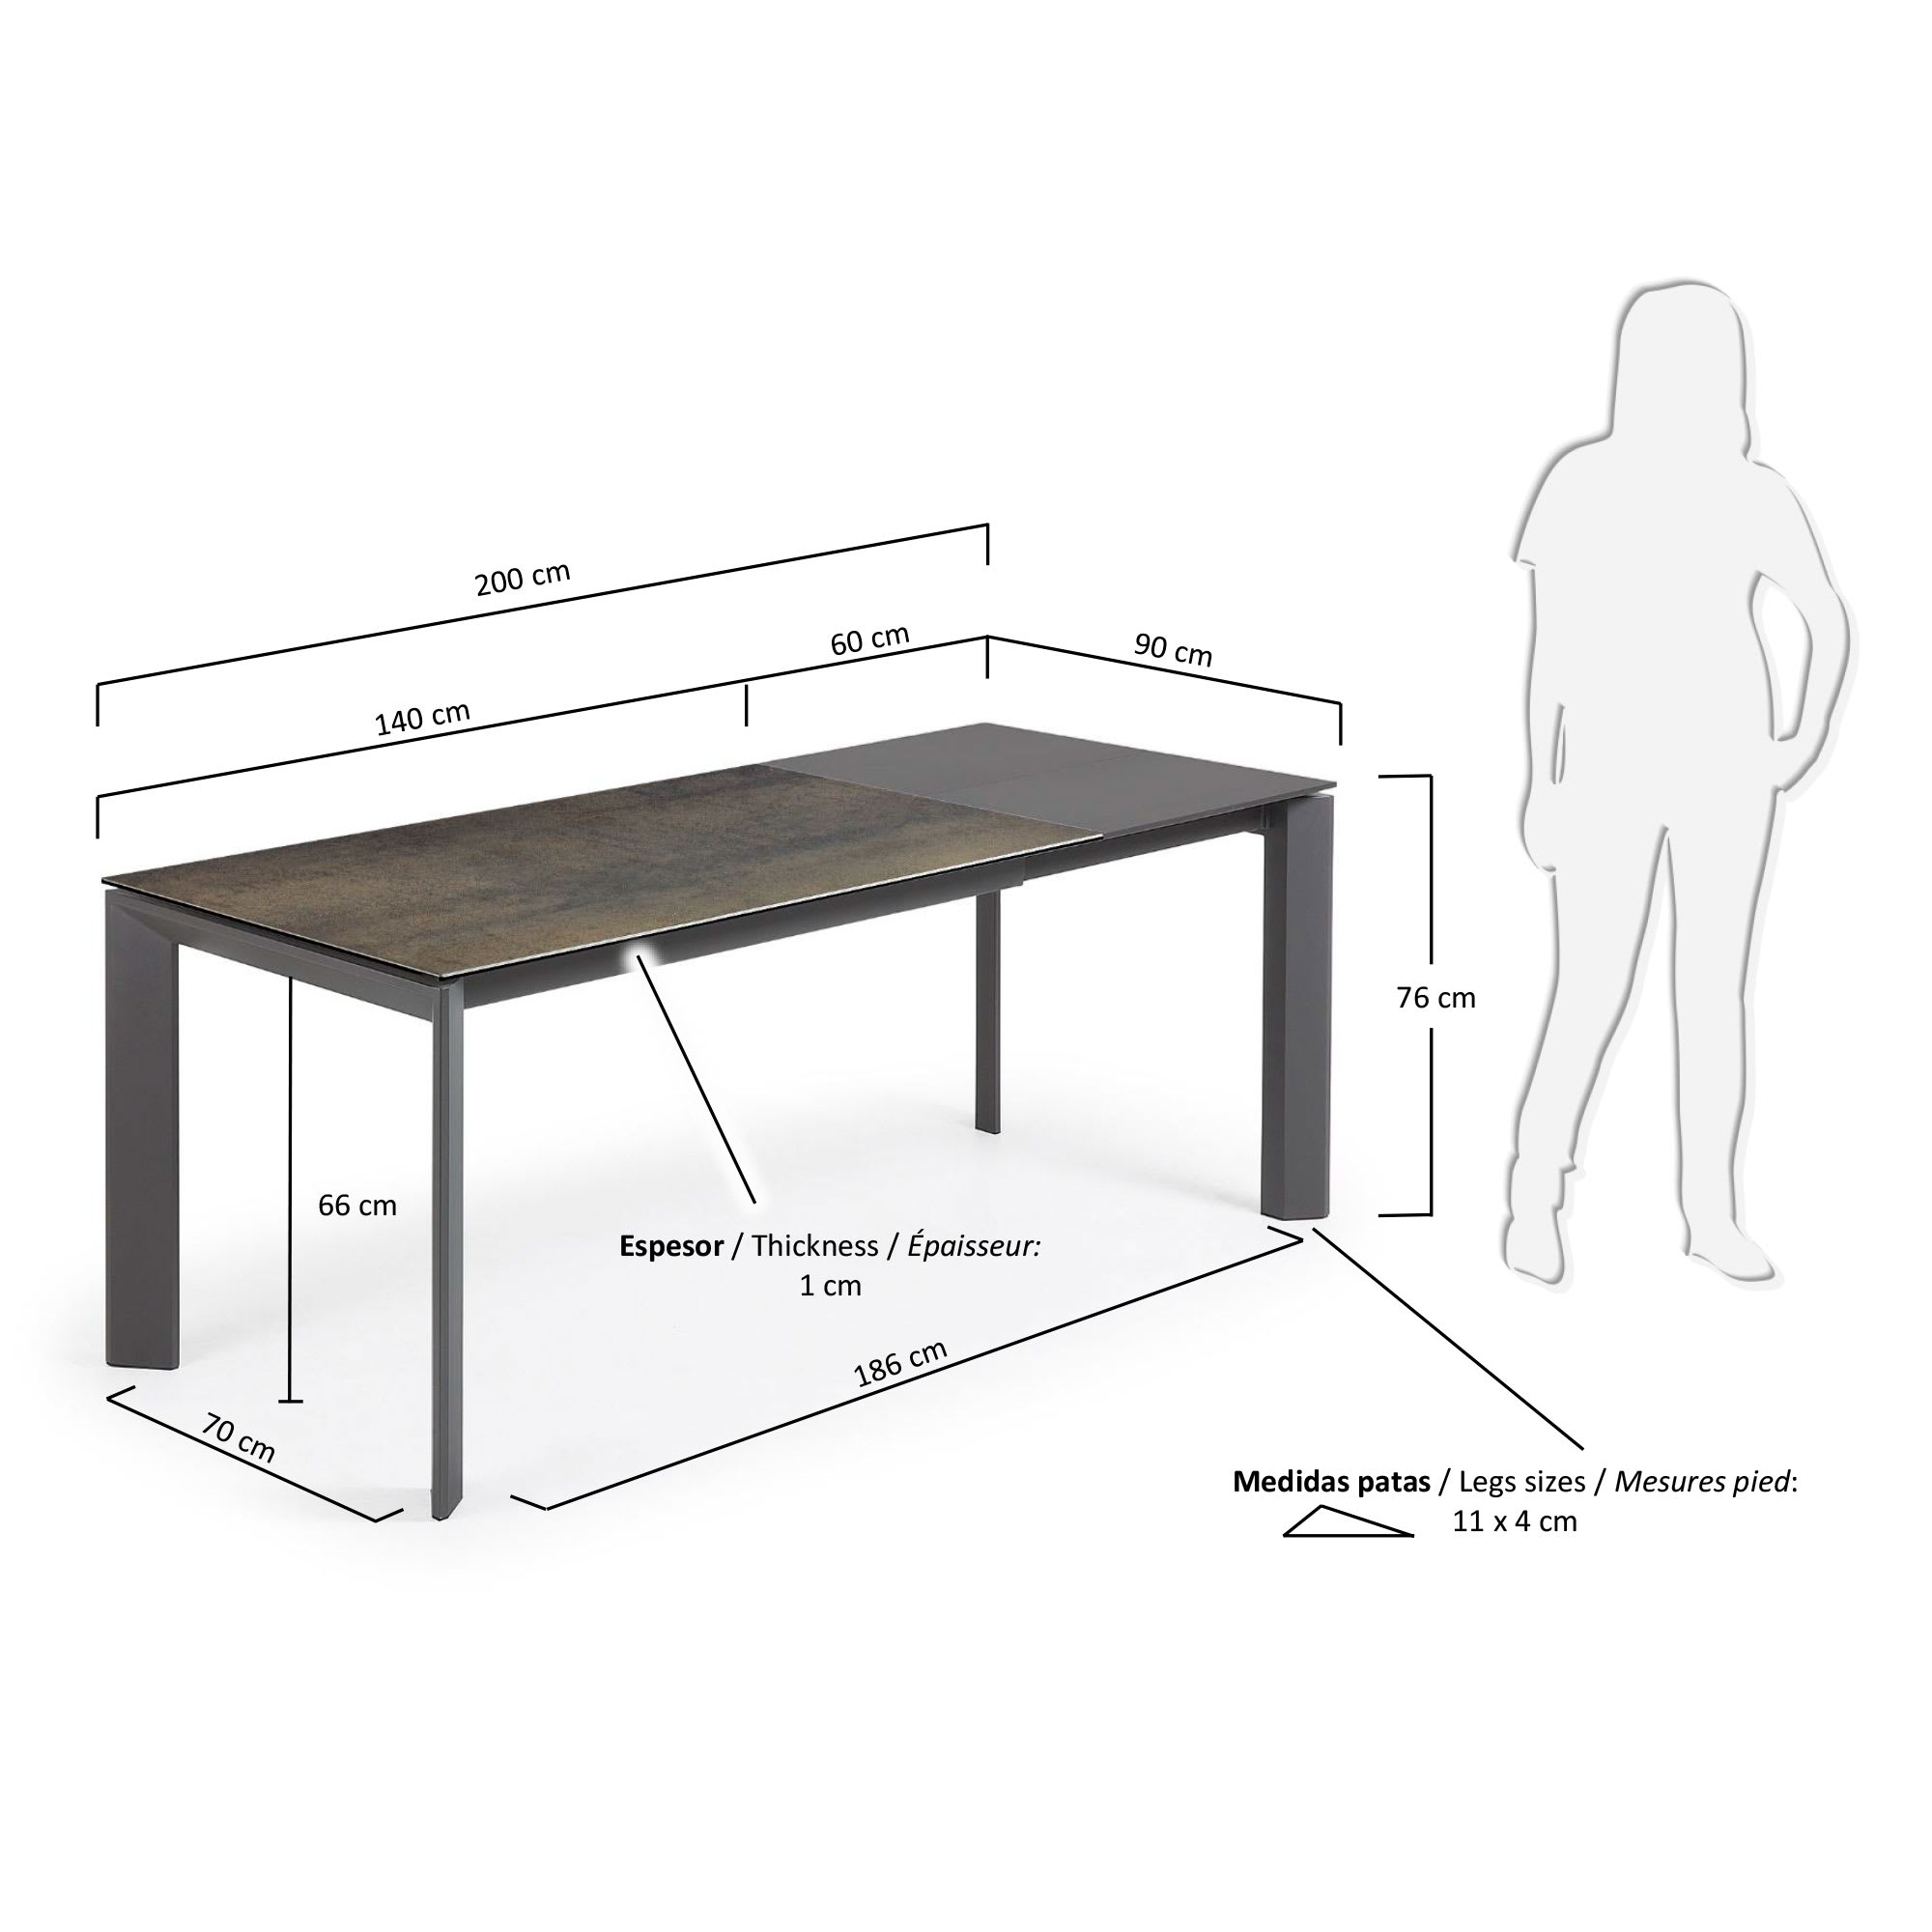 엑시스 세라믹 확장형 테이블 IM (90 x 140-200cm) - 크기